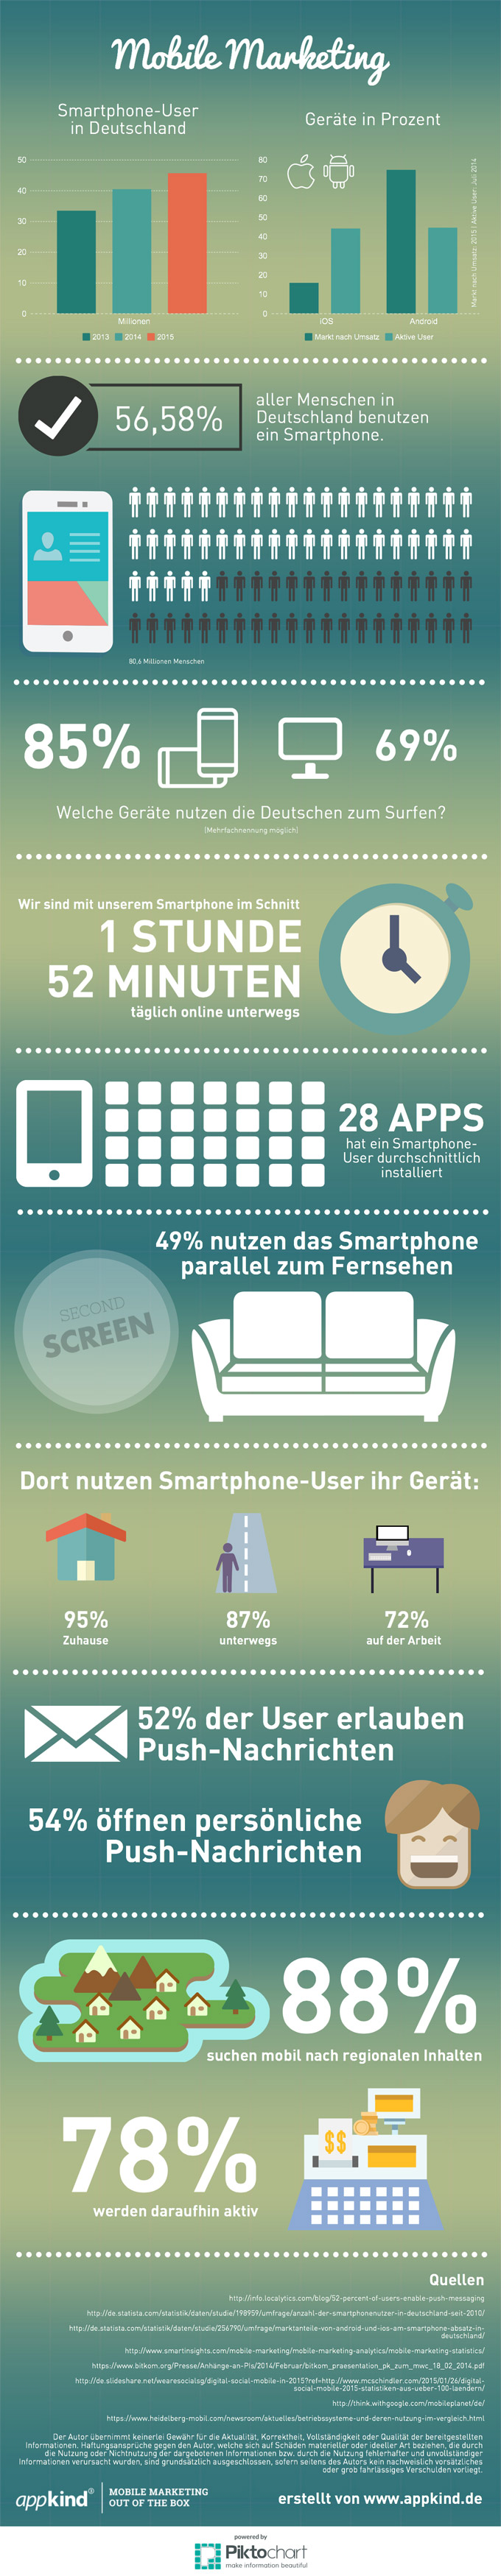 mobile marketing infografik appkind